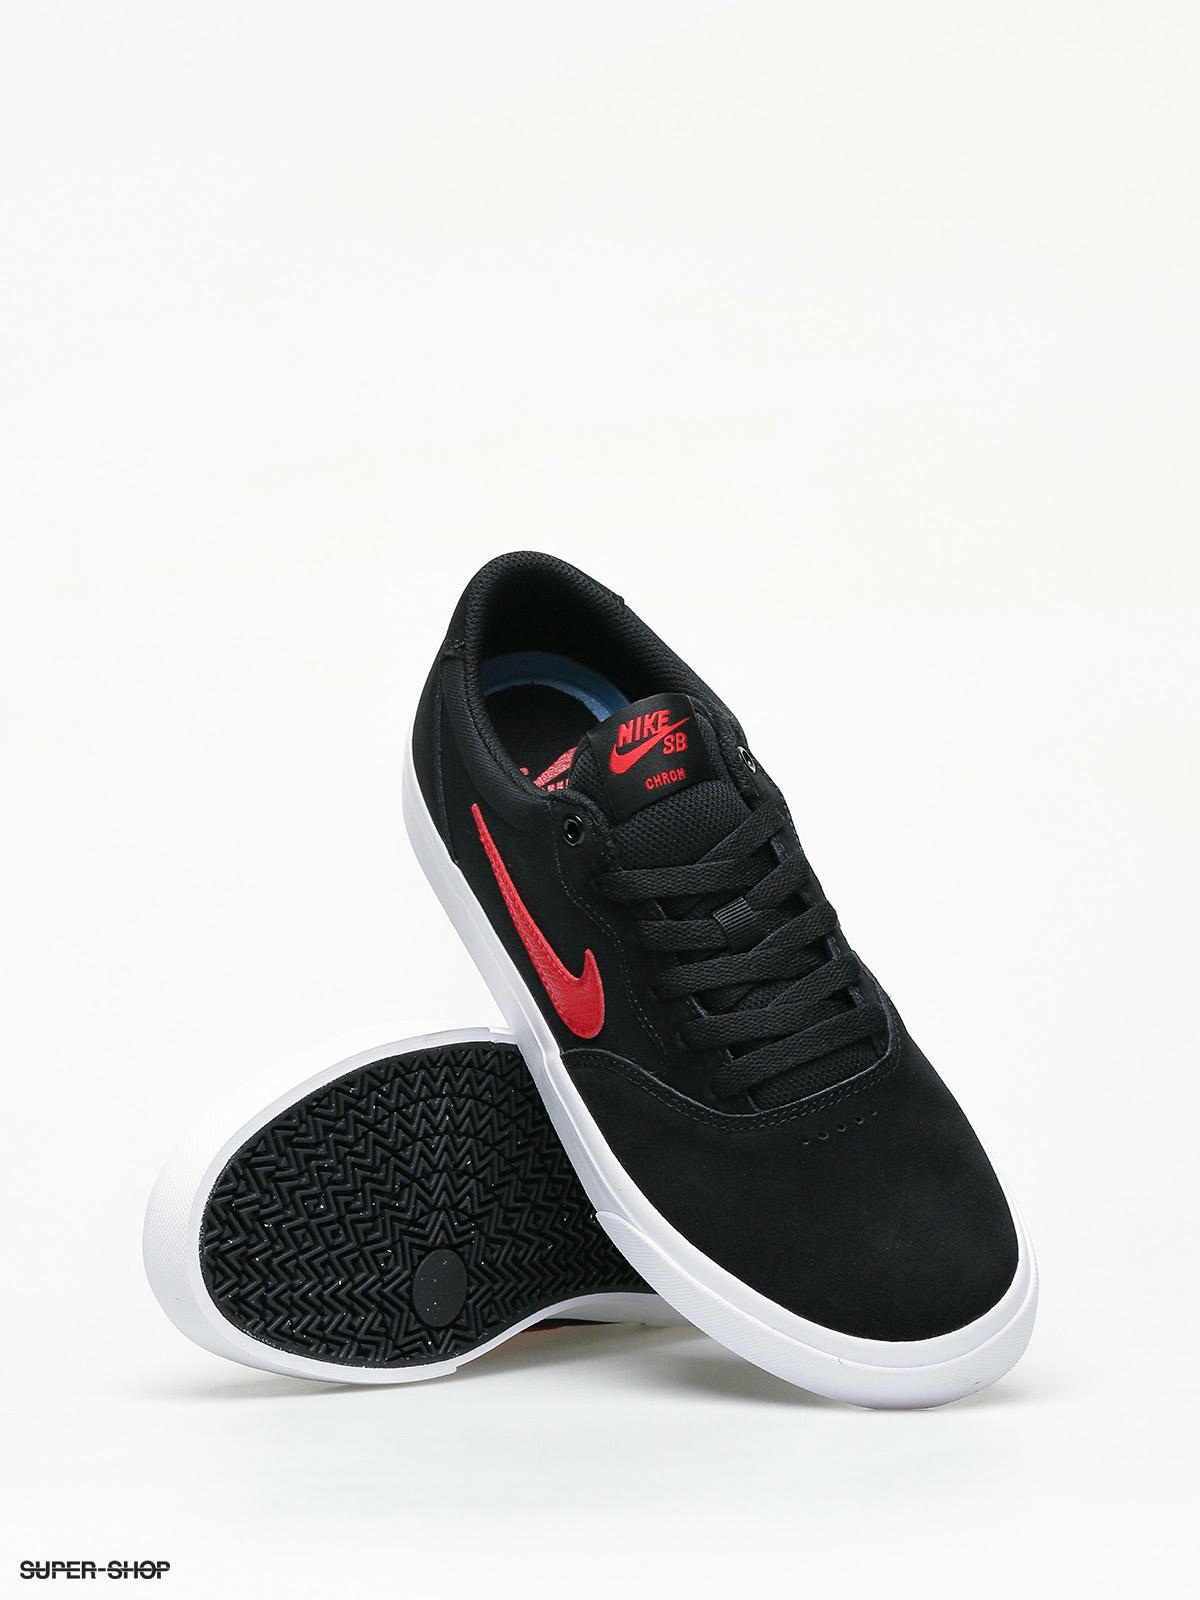 Nike SB Chron Slr Shoes (black 